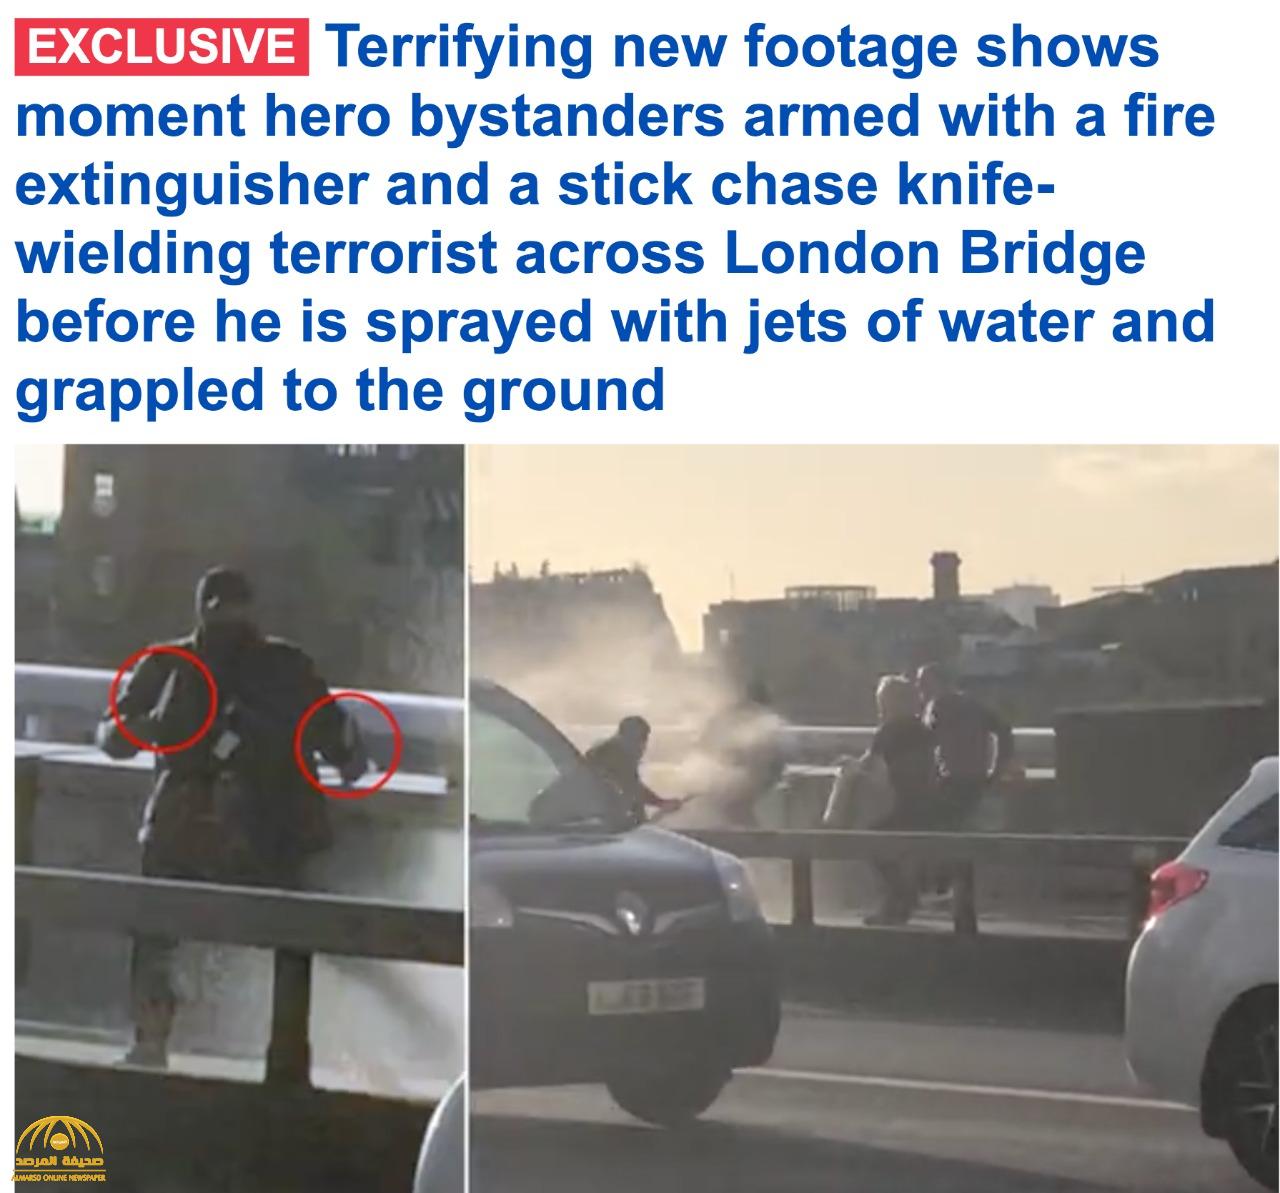 شاهد مقطع جديد لحظة القبض على الإرهابي منفذ هجوم الطعن في لندن قبل مقتله.. والكشف عن هويته